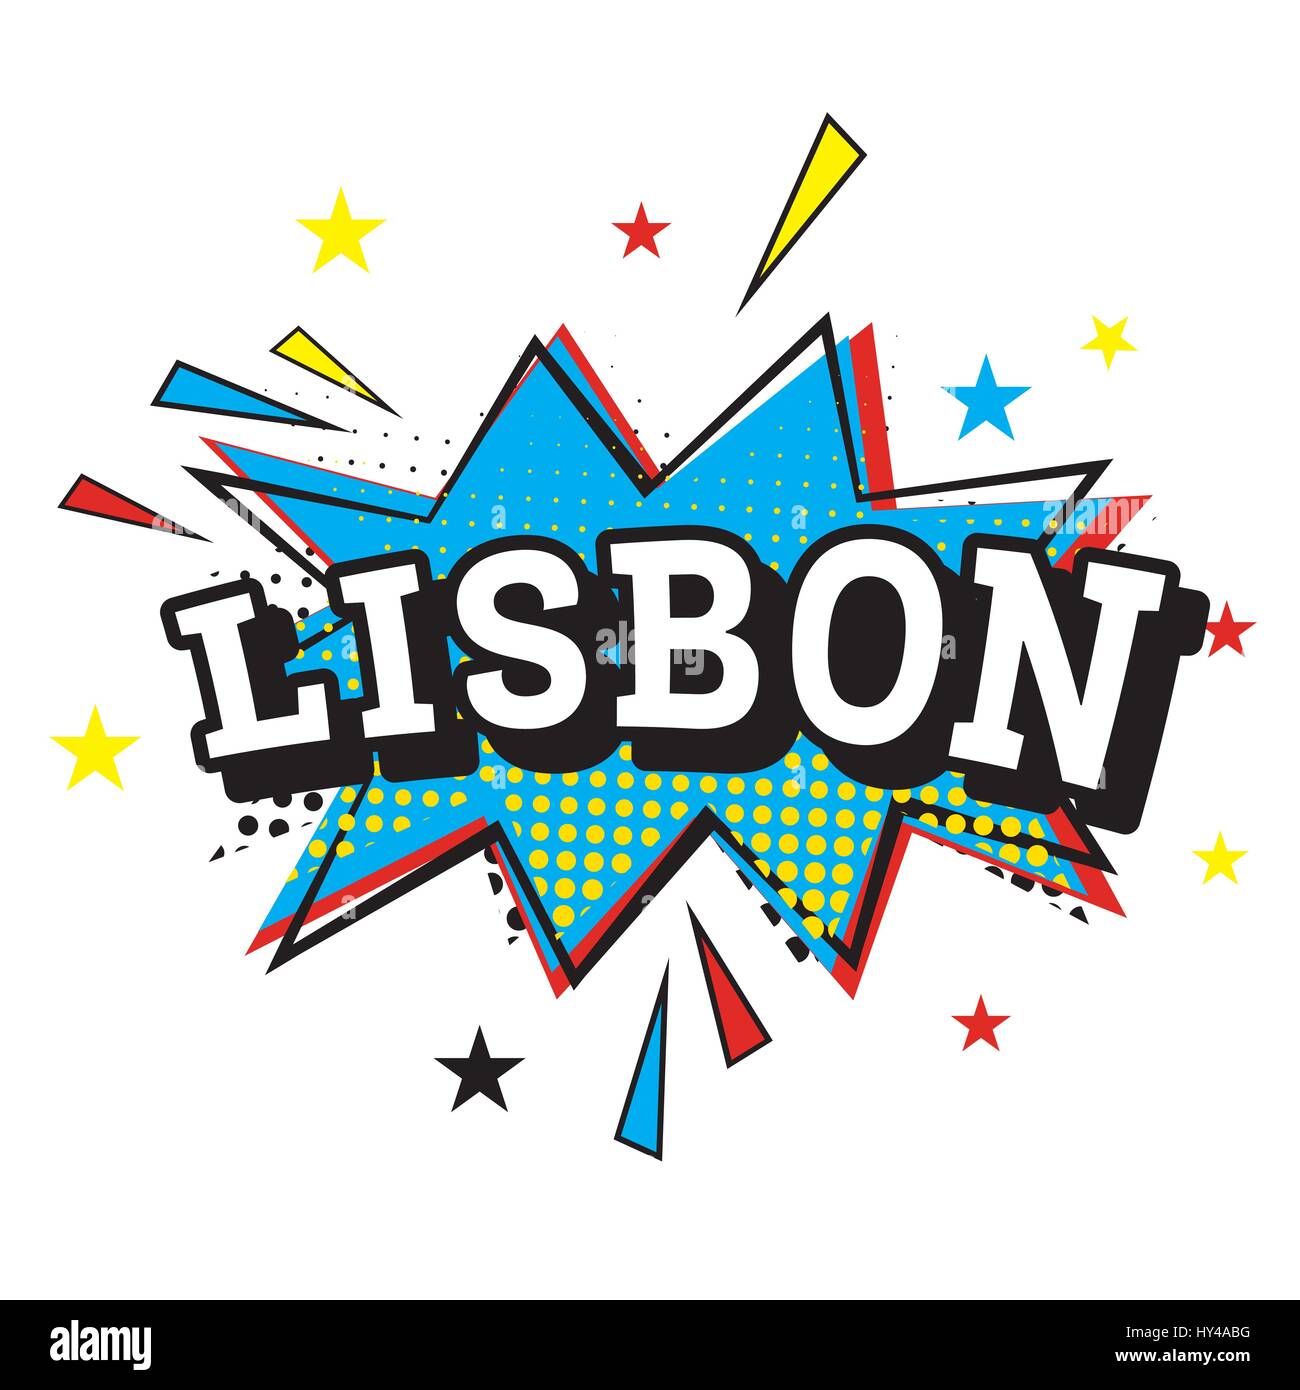 Lisbona. testo di fumetti in pop art style. illustrazione vettoriale Illustrazione Vettoriale